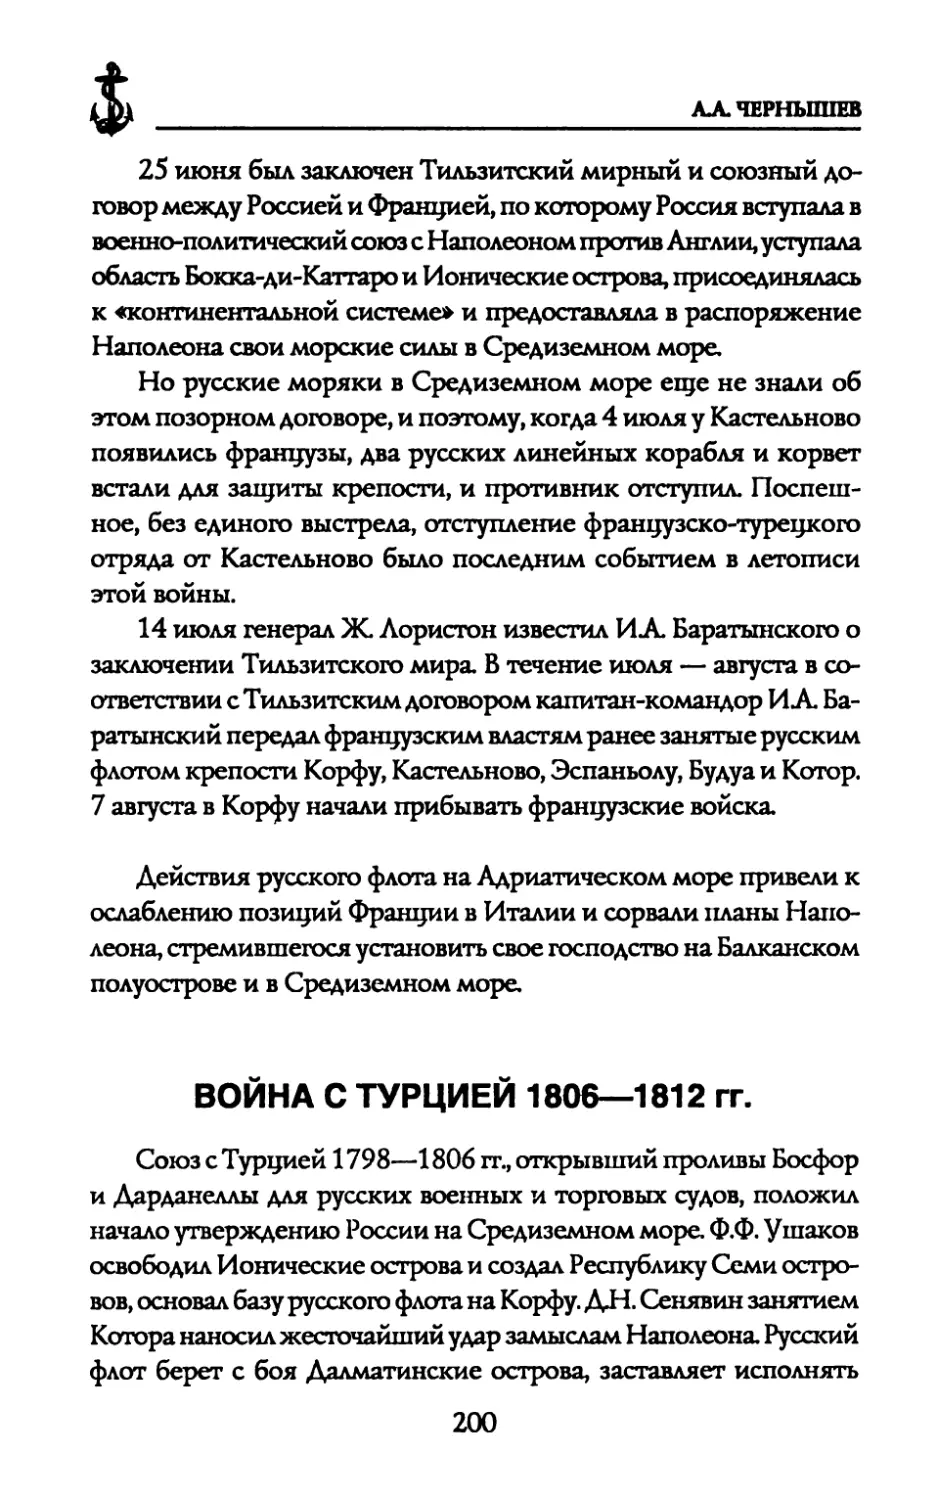 ВОЙНА С ТУРЦИЕЙ 1806—1812 гг.